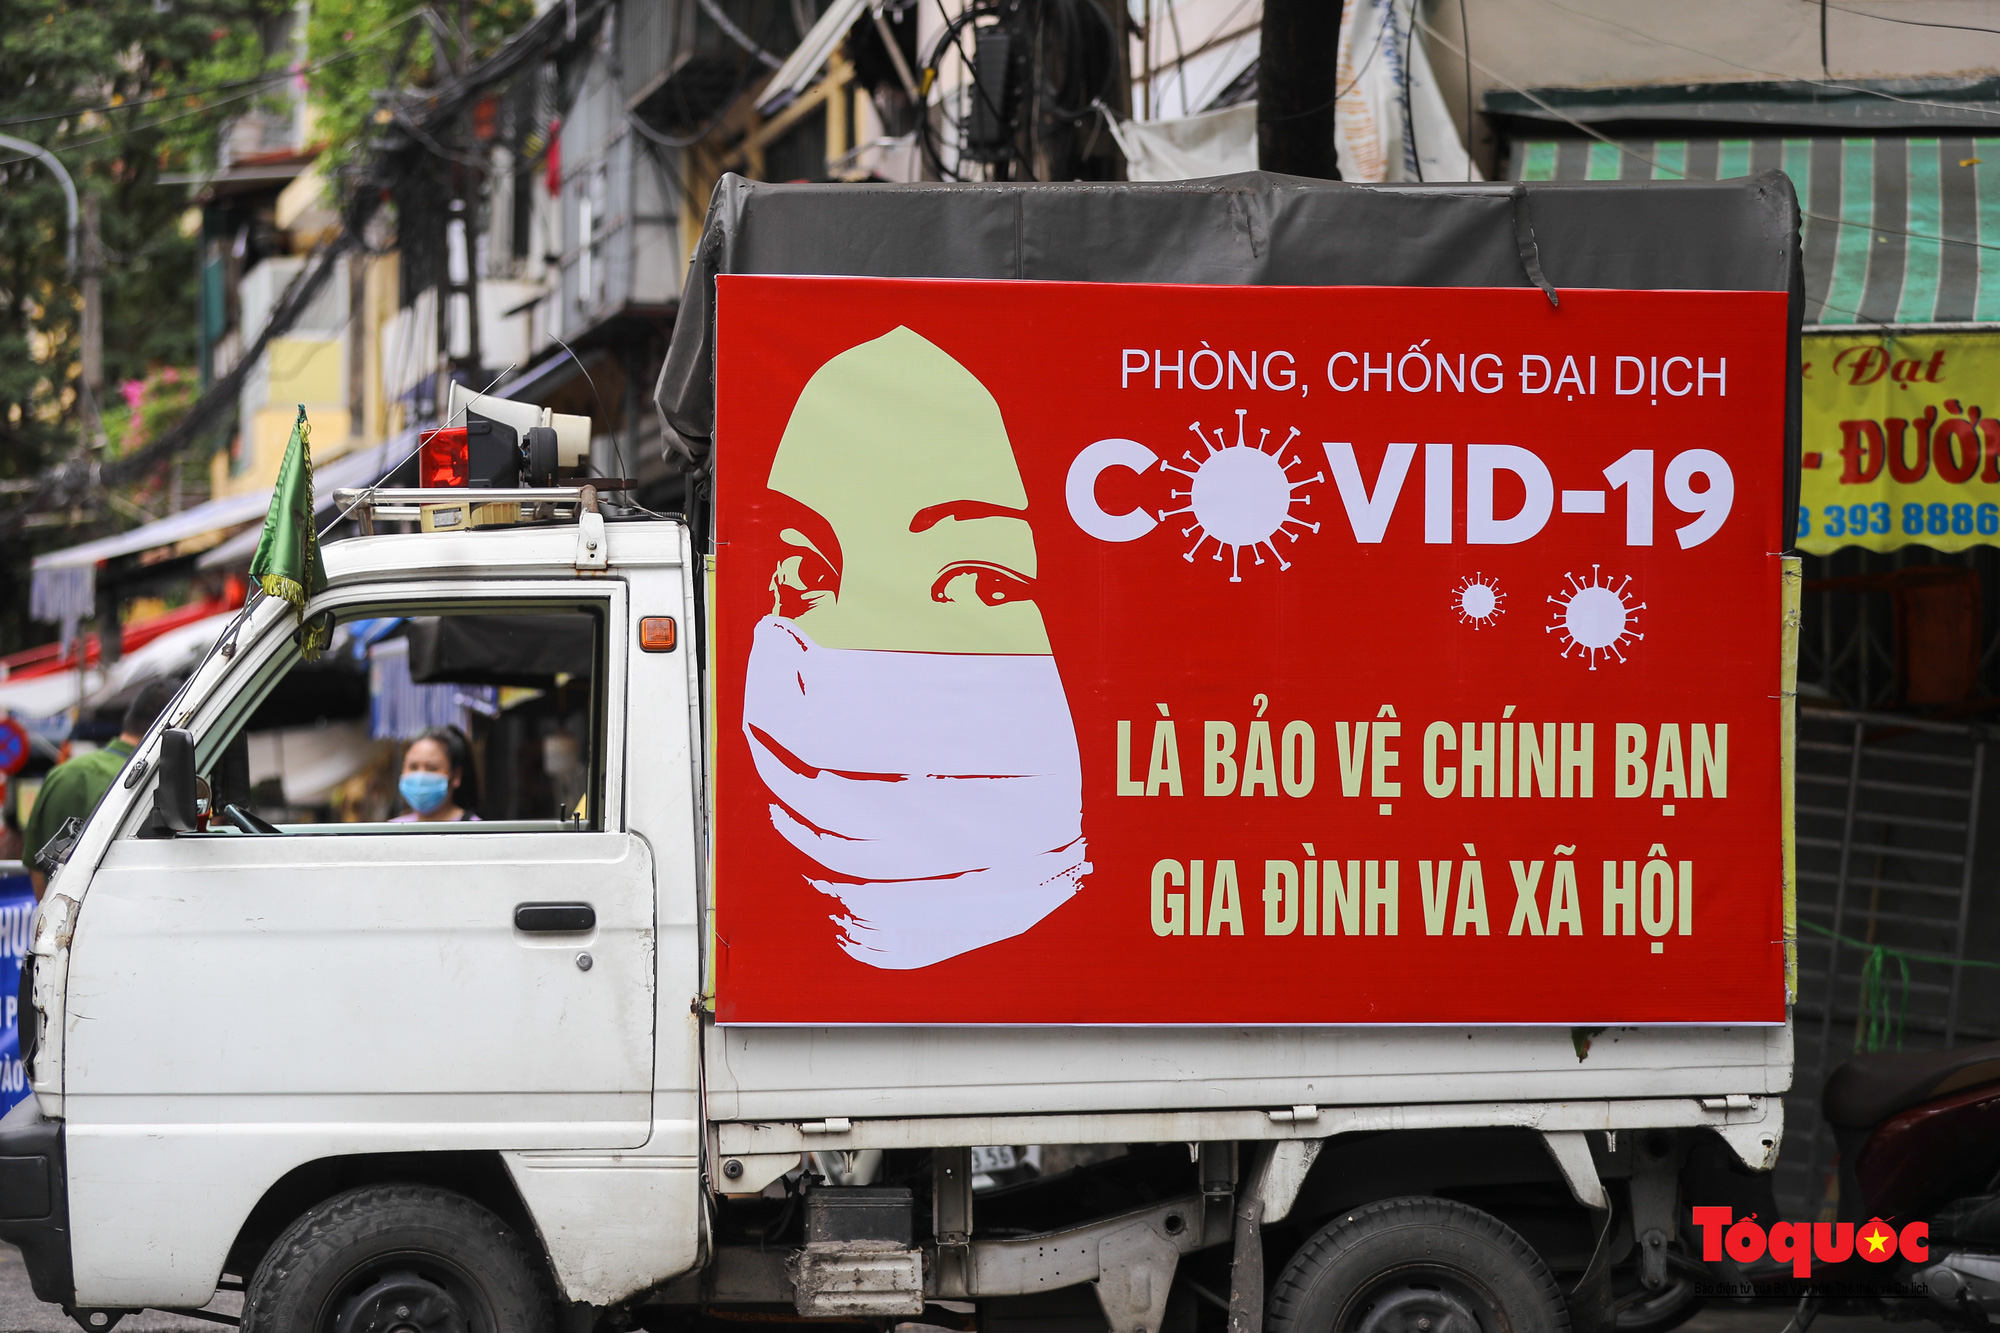 Pano, hình ảnh cổ động phòng chống dịch COVID-19 trên khắp đường phố Hà Nội - Ảnh 12.